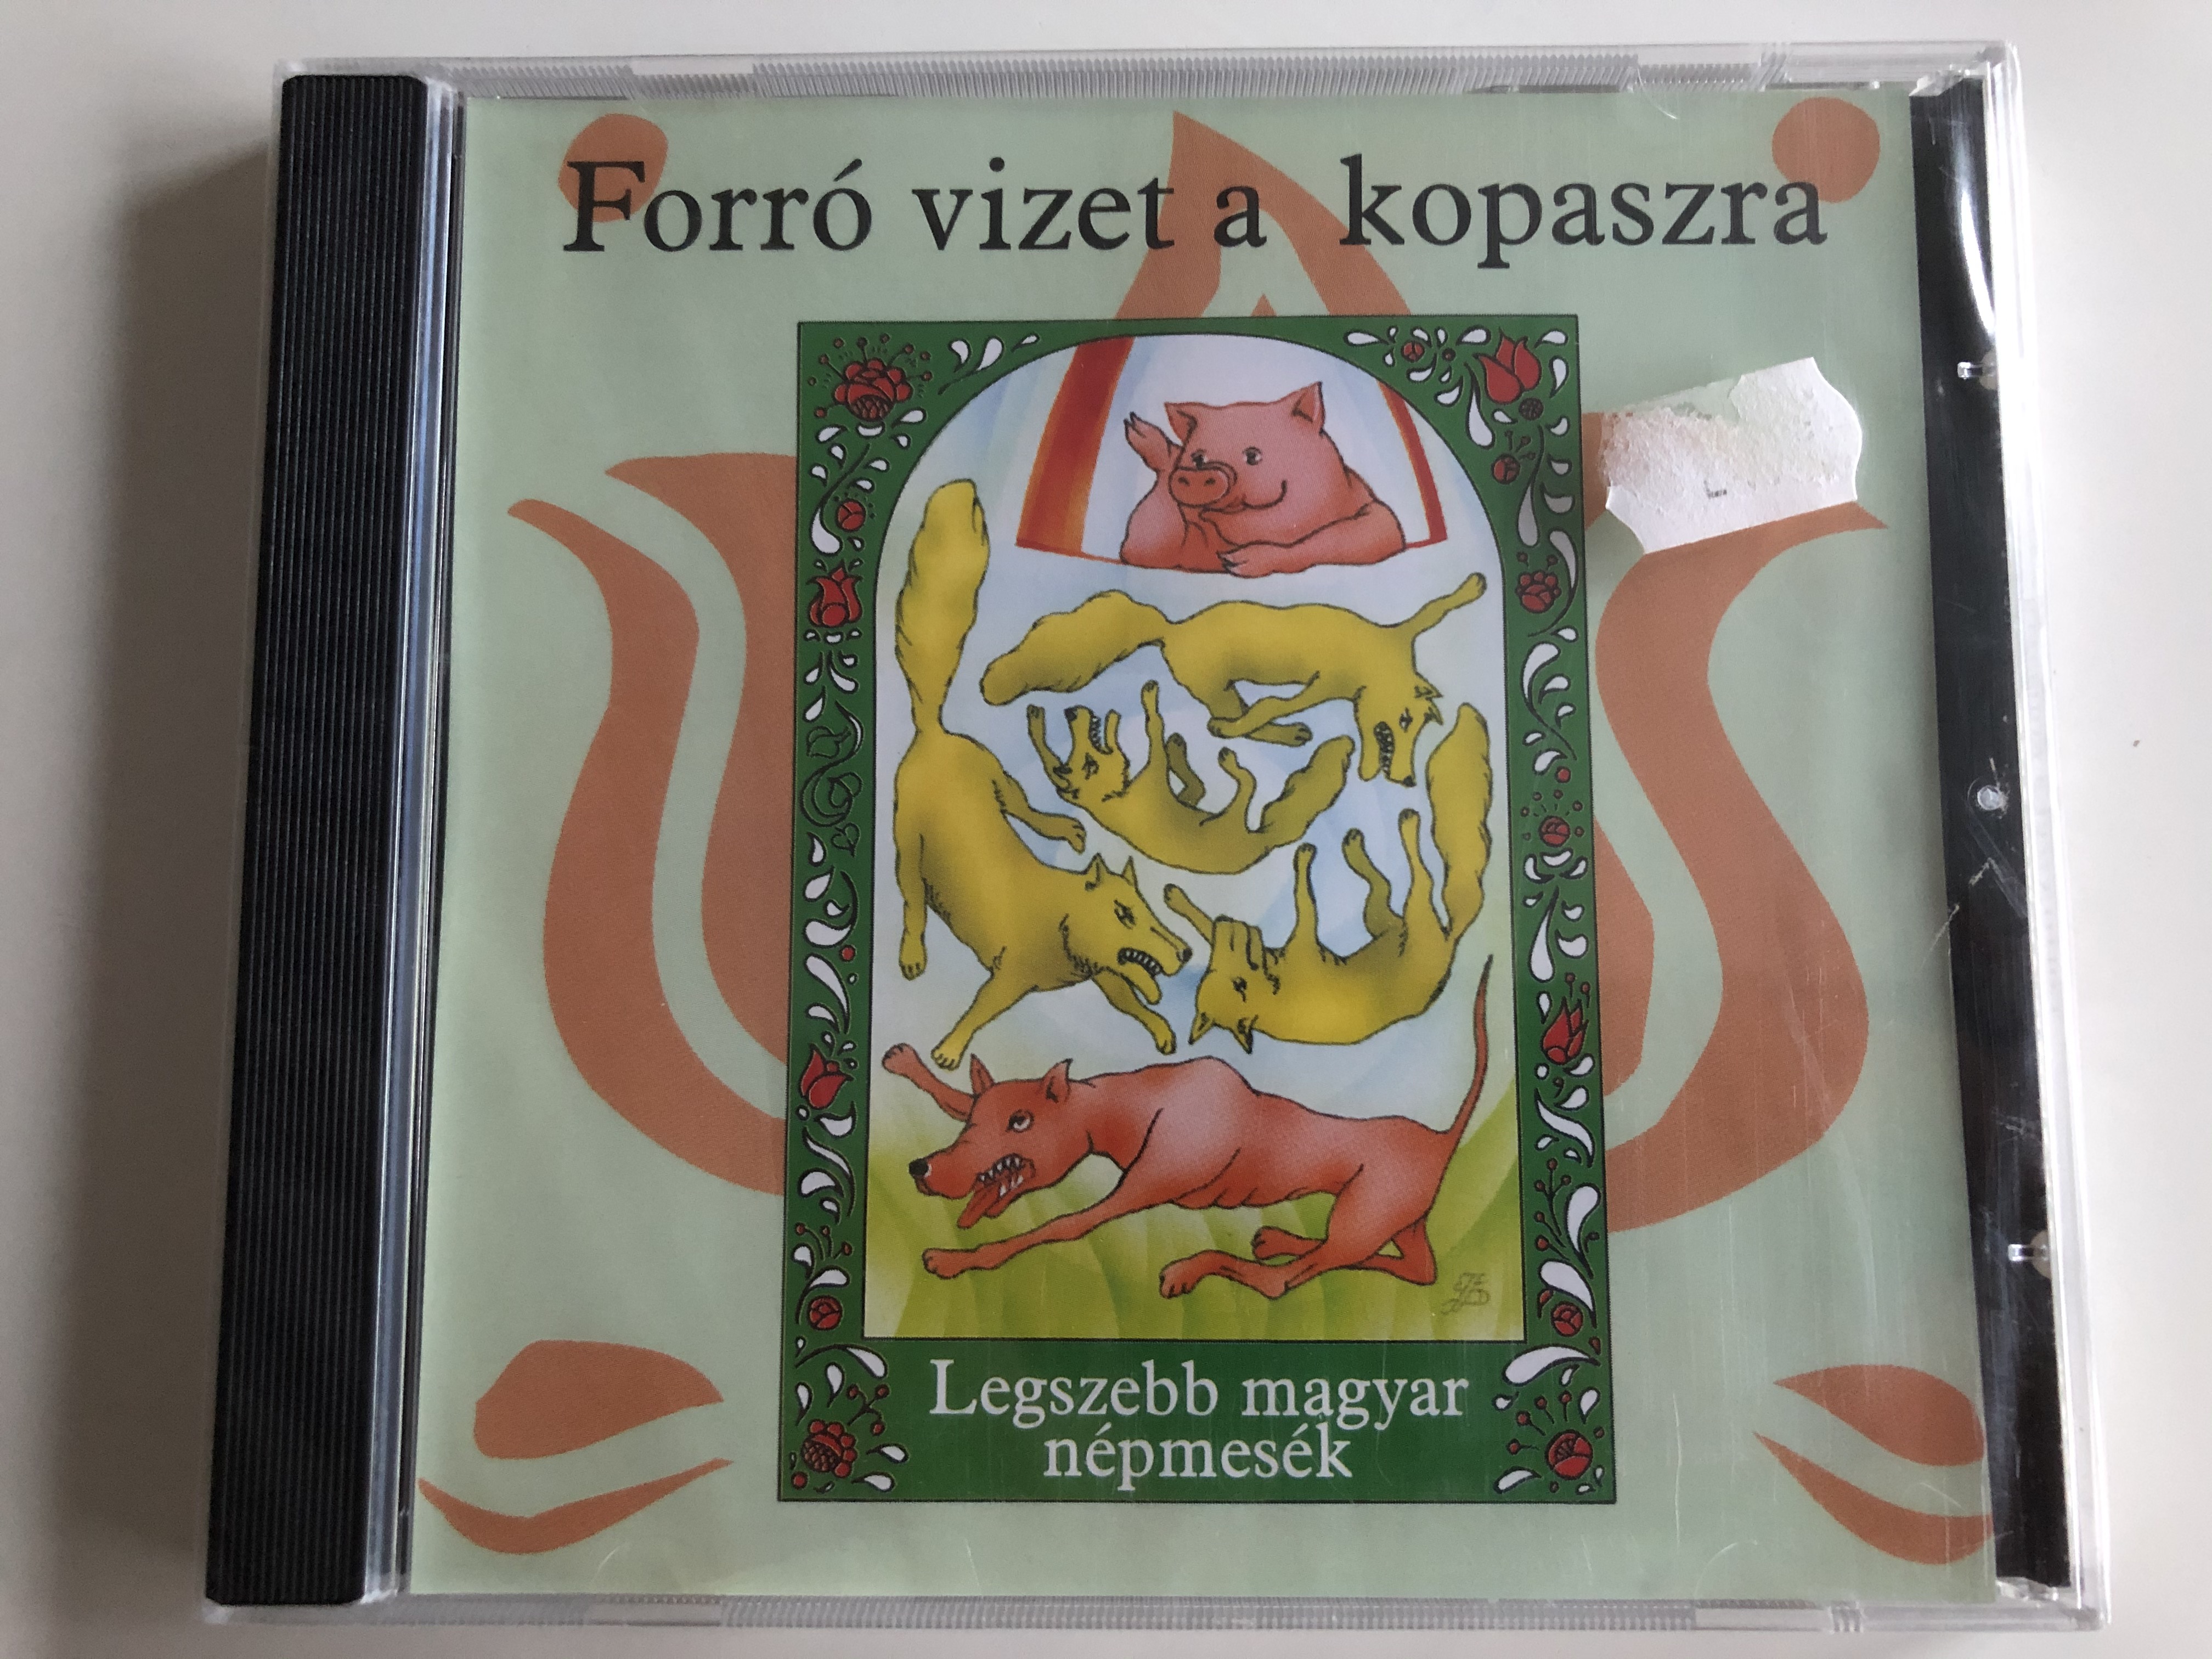 forro-vizet-a-kopaszra-legszebb-magyar-nepmesek-e.z.s.-music-audio-cd-5998557116921-1-.jpg